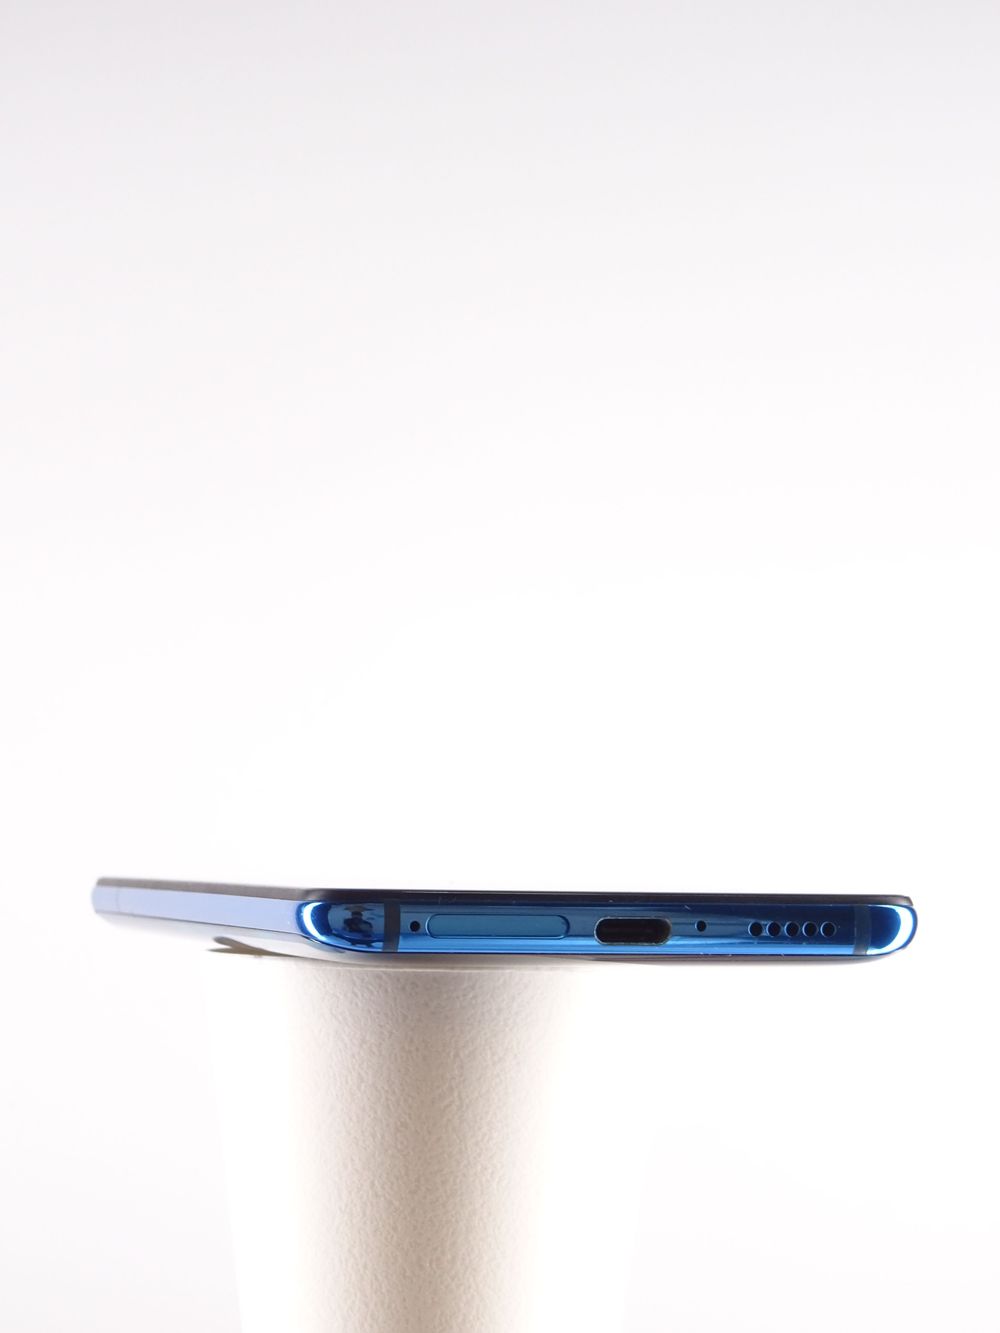 Telefon mobil Xiaomi Mi 9T, Glacier Blue, 128 GB,  Excelent